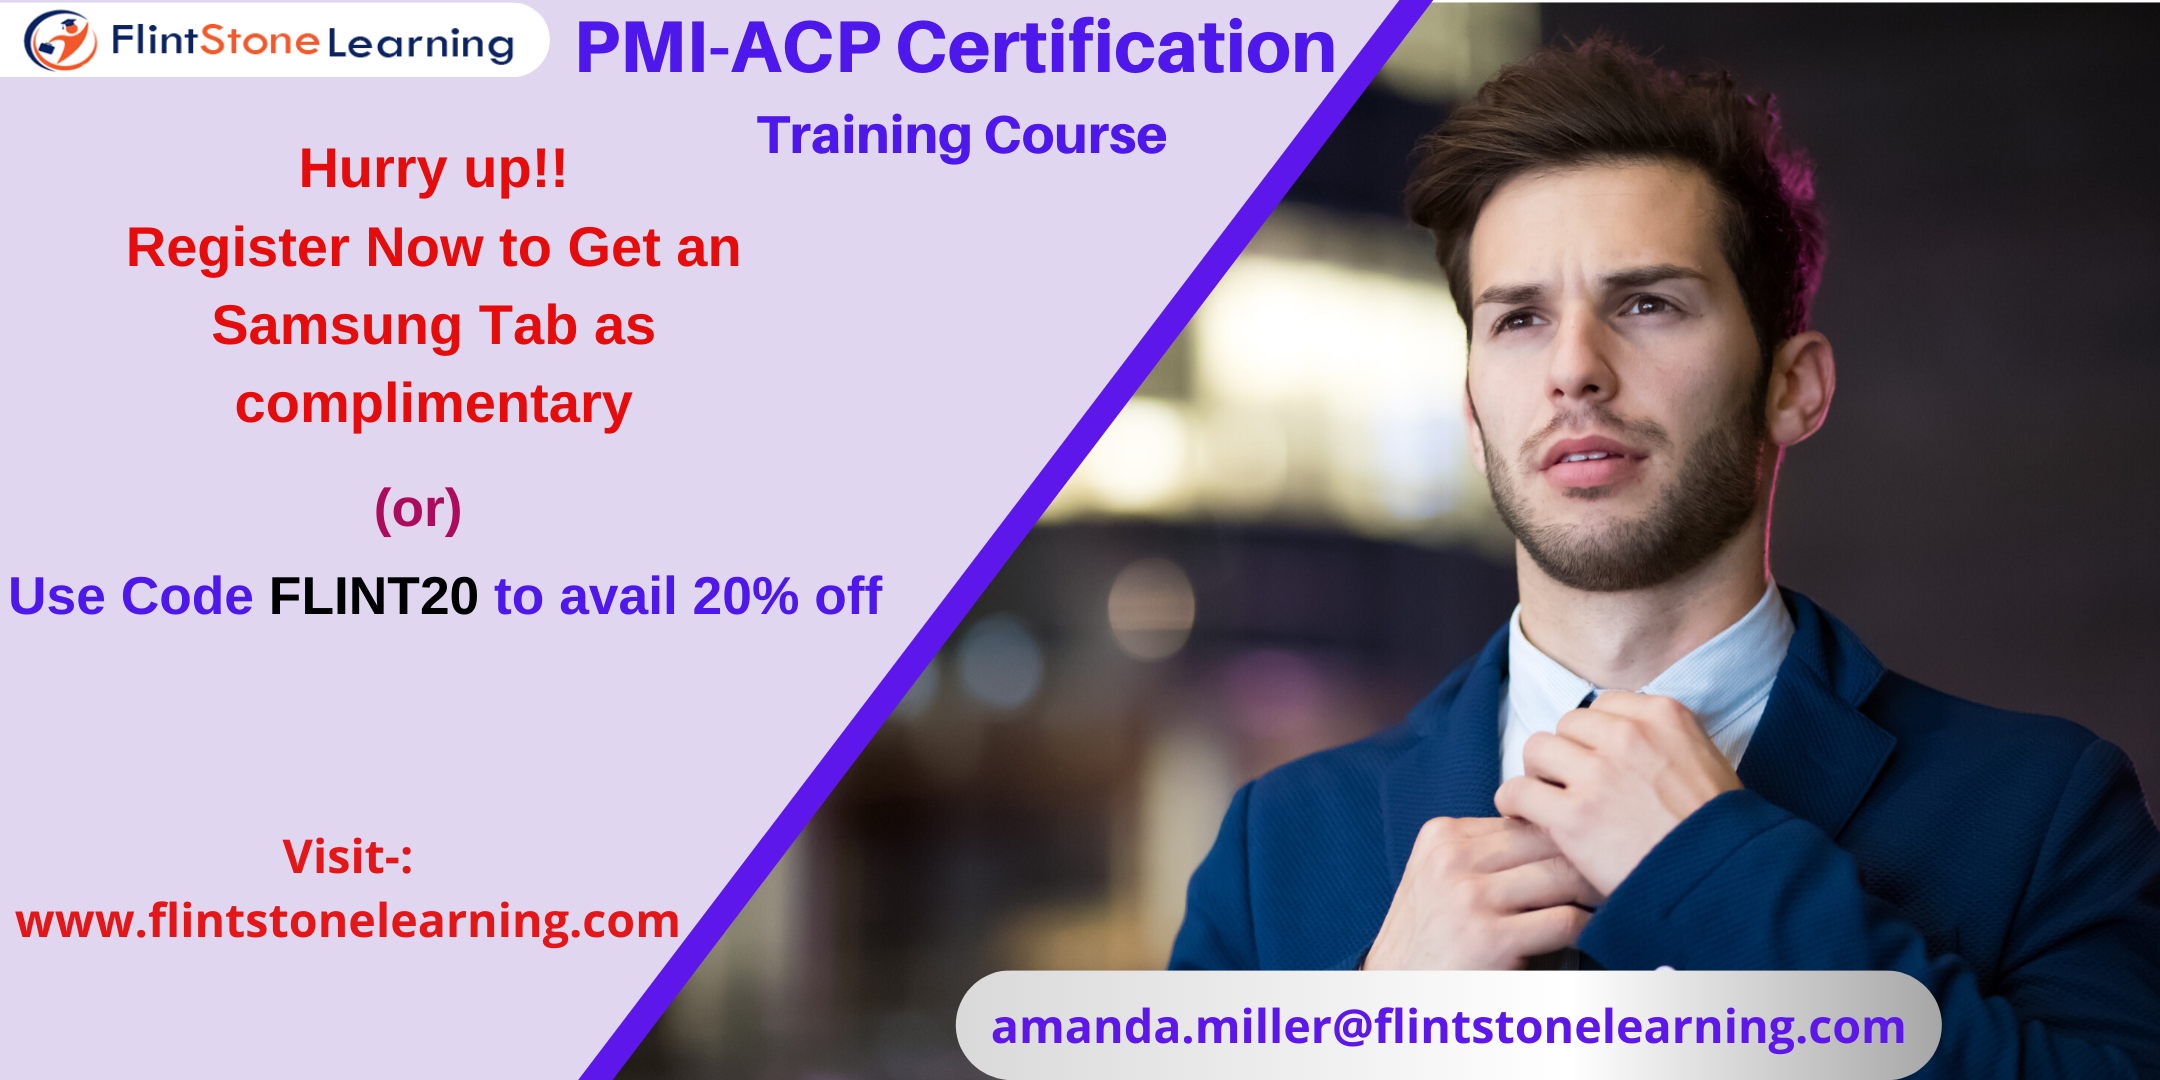 PMI-ACP Certification Training Course in Coronado, CA